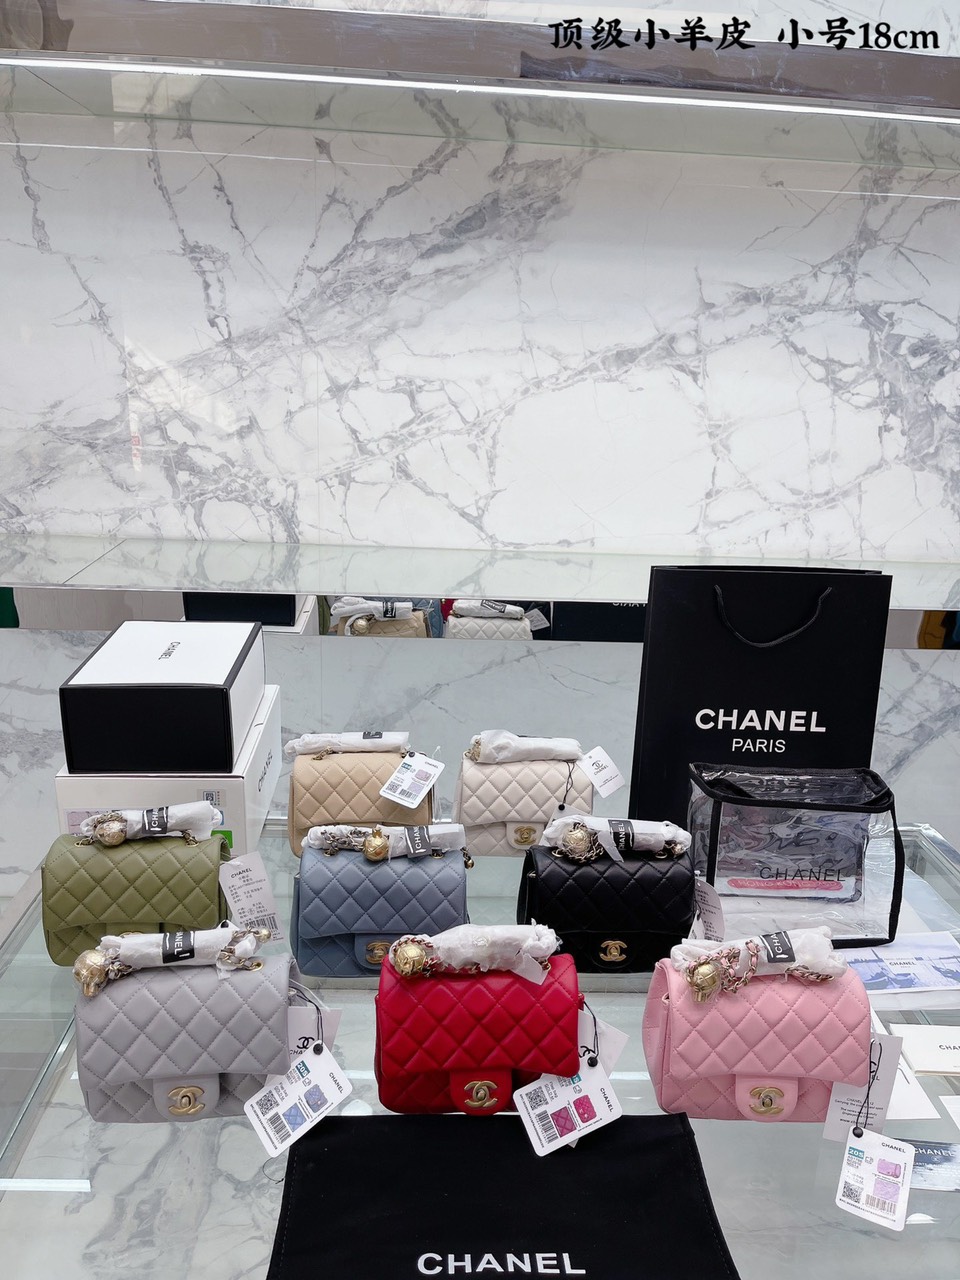 Tổng Hợp Túi Xách Chanel Super Mini Charm Quả Chuông Size 18cm